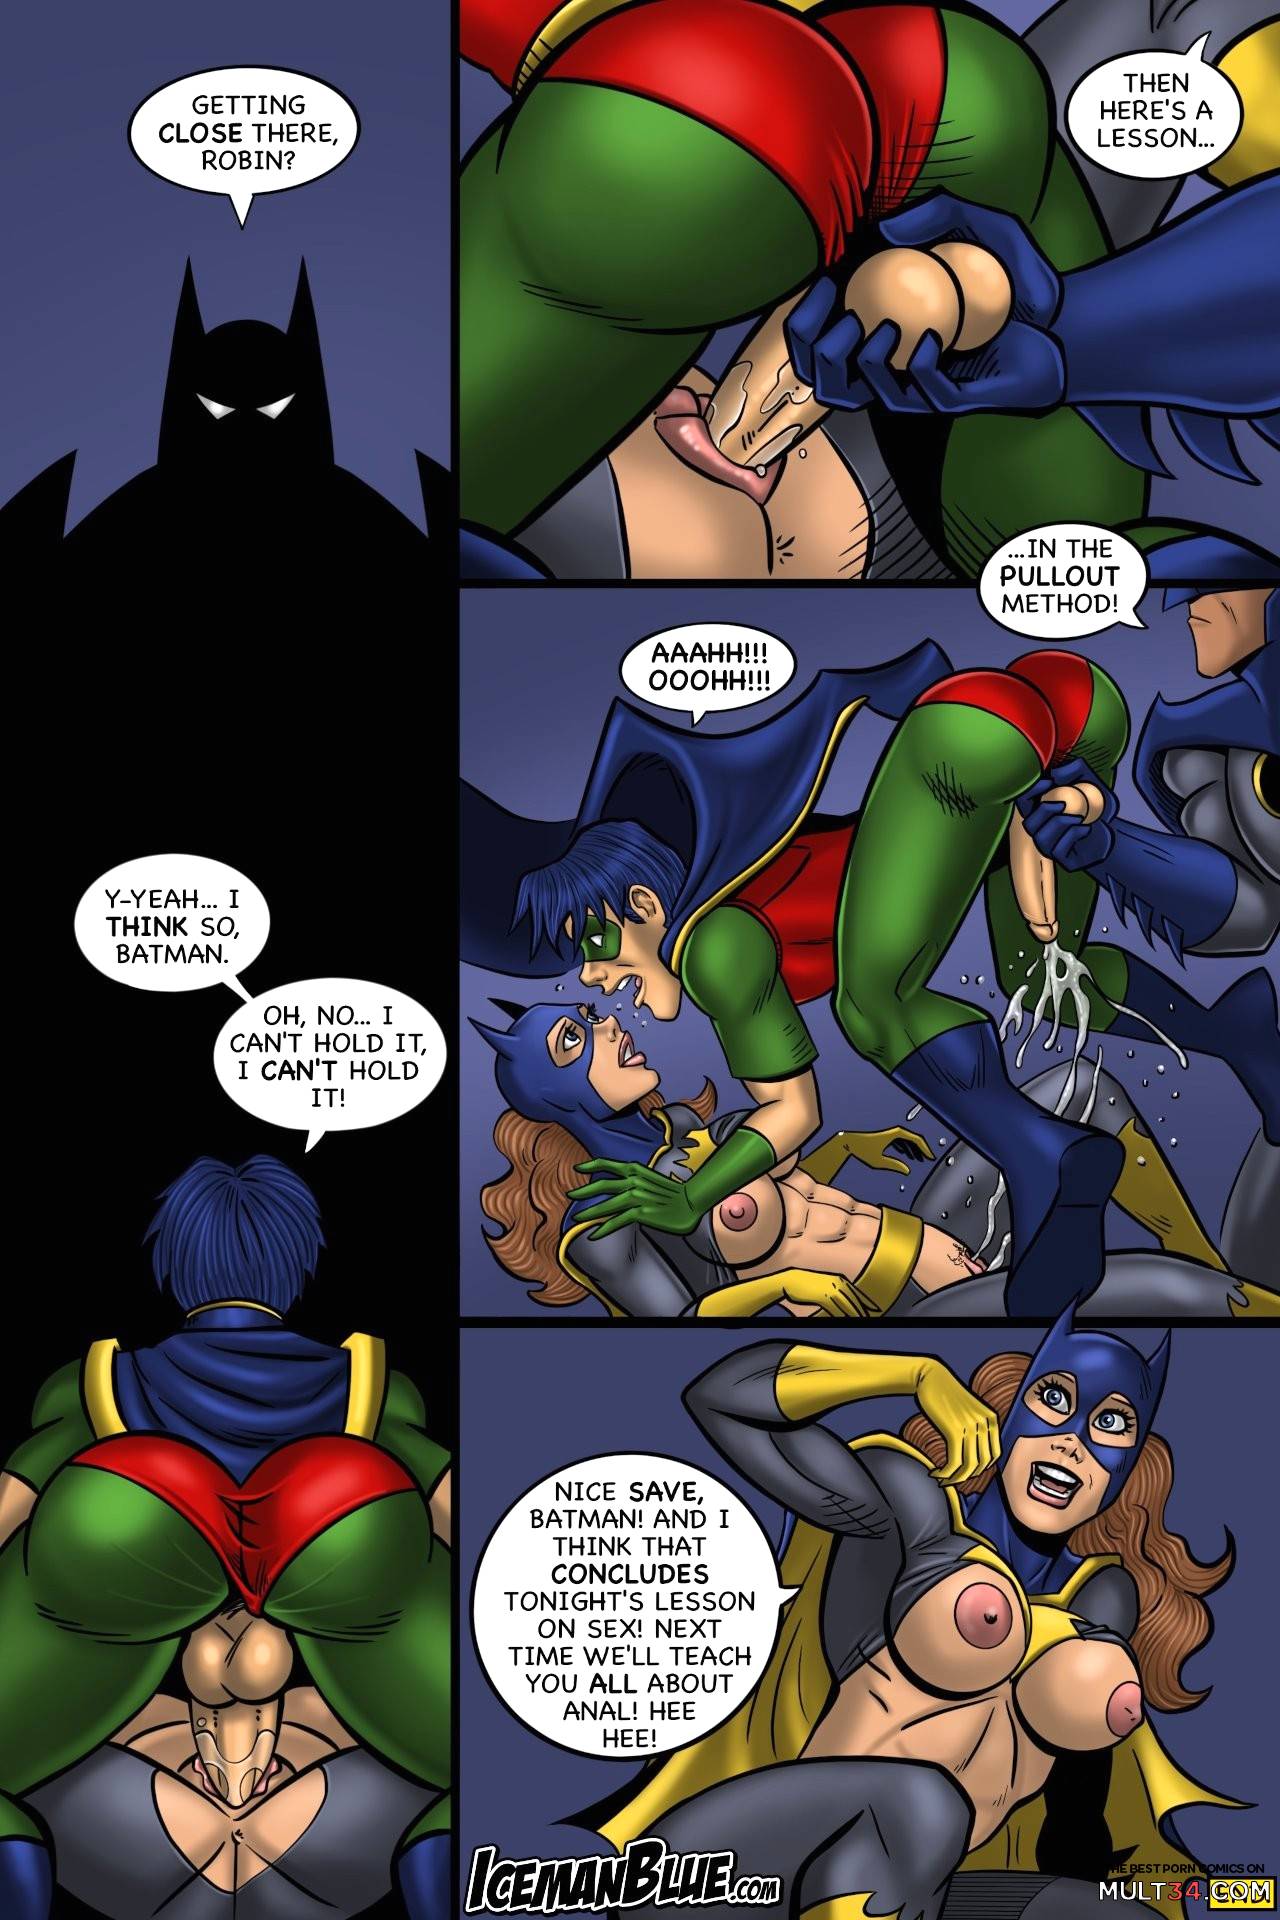 Robin And Batgirl Sex - Batgirl gay porn comic - the best cartoon porn comics, Rule 34 | MULT34